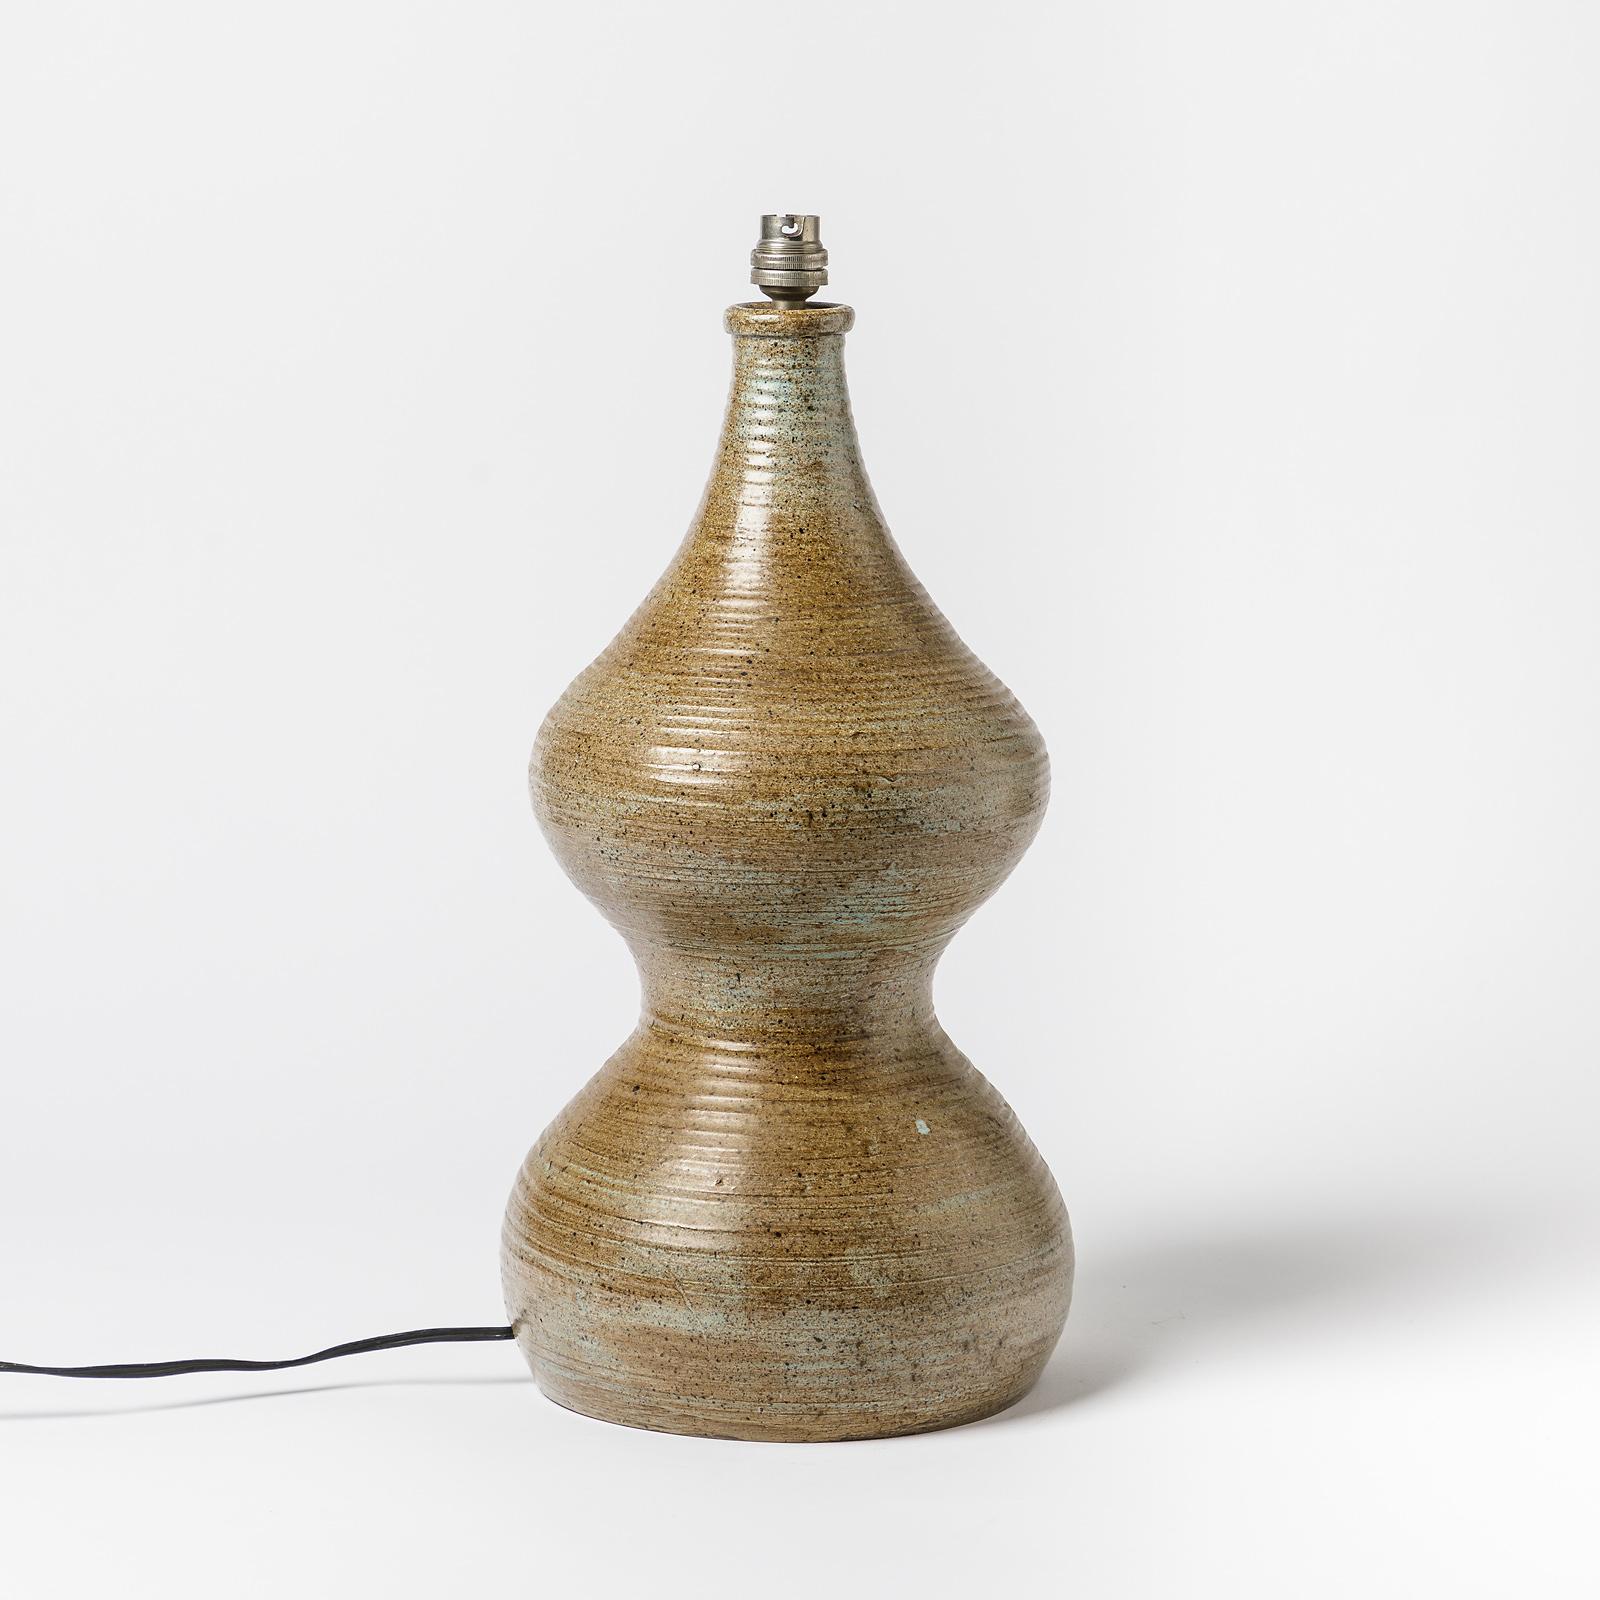 French Ceramic Table Lamp, Signed Monique, circa 1960-1970 to La Borne, France